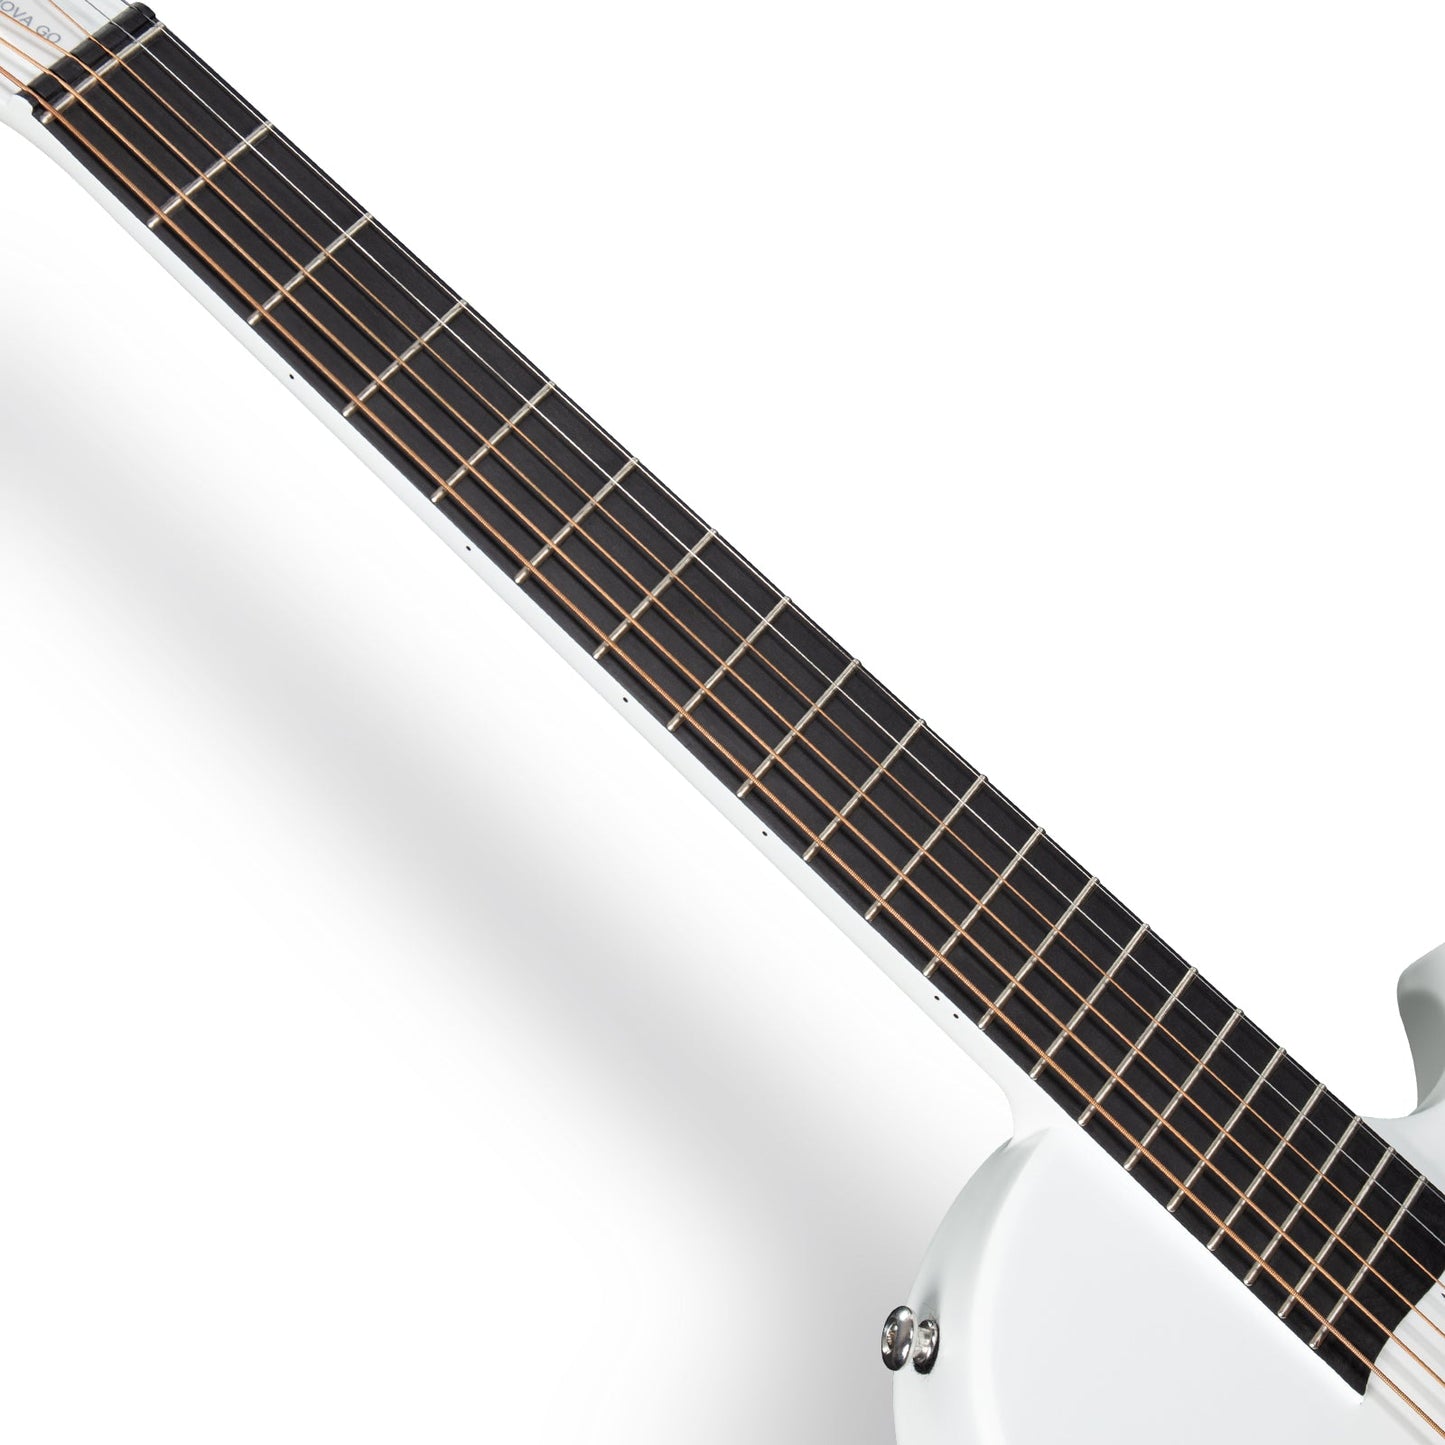 ENYA NOVA GO Carbon Guitar White